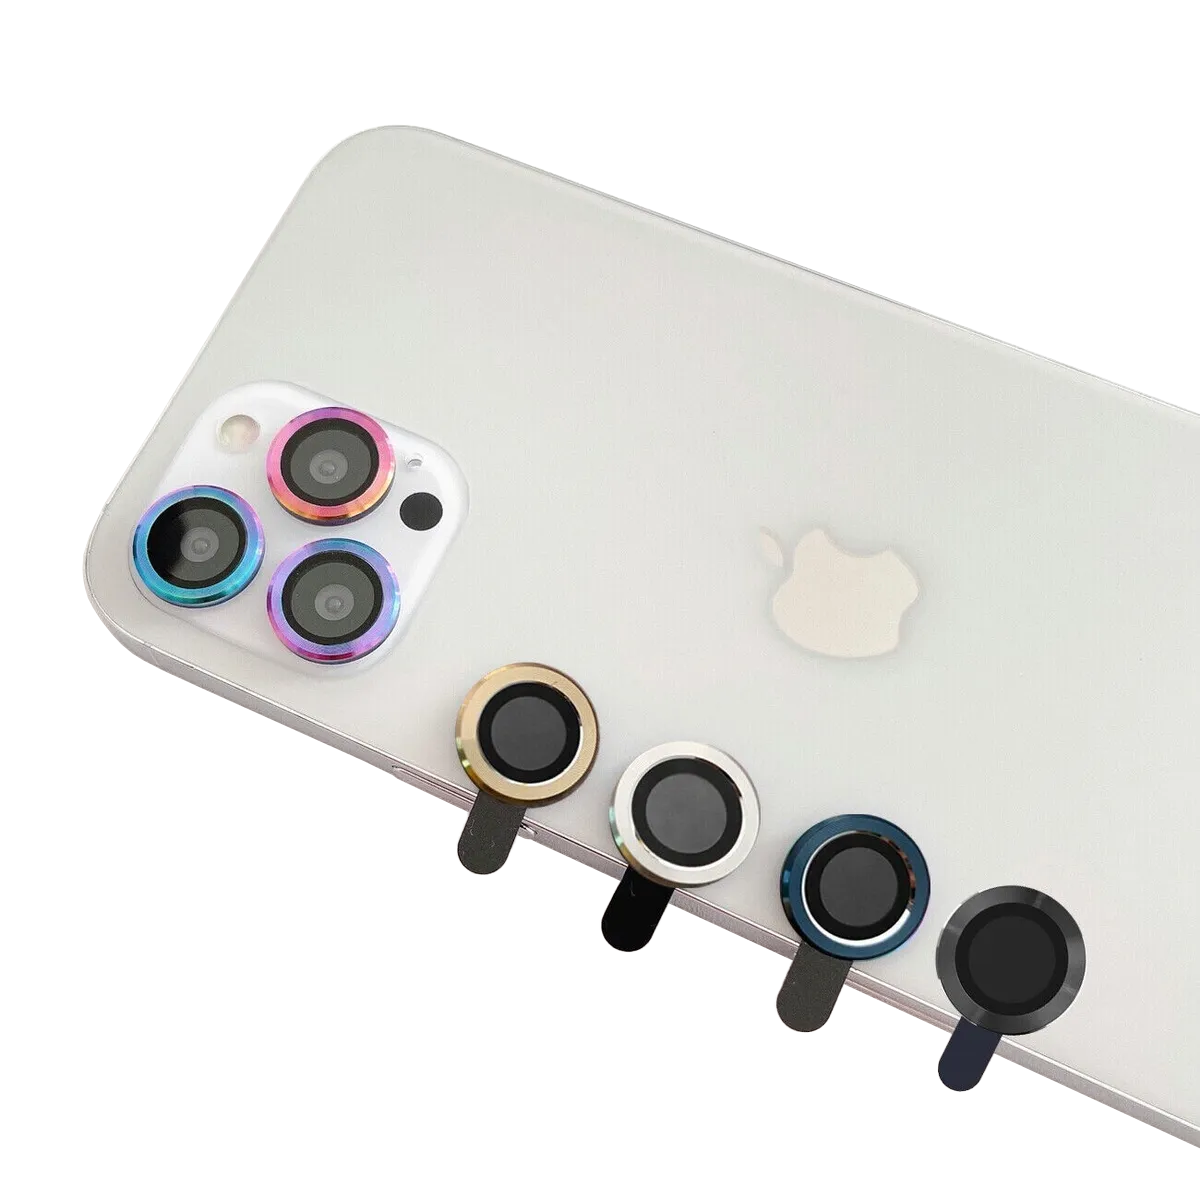 Protector cámara iPhone 13 Pro y 13 Pro Max Epico